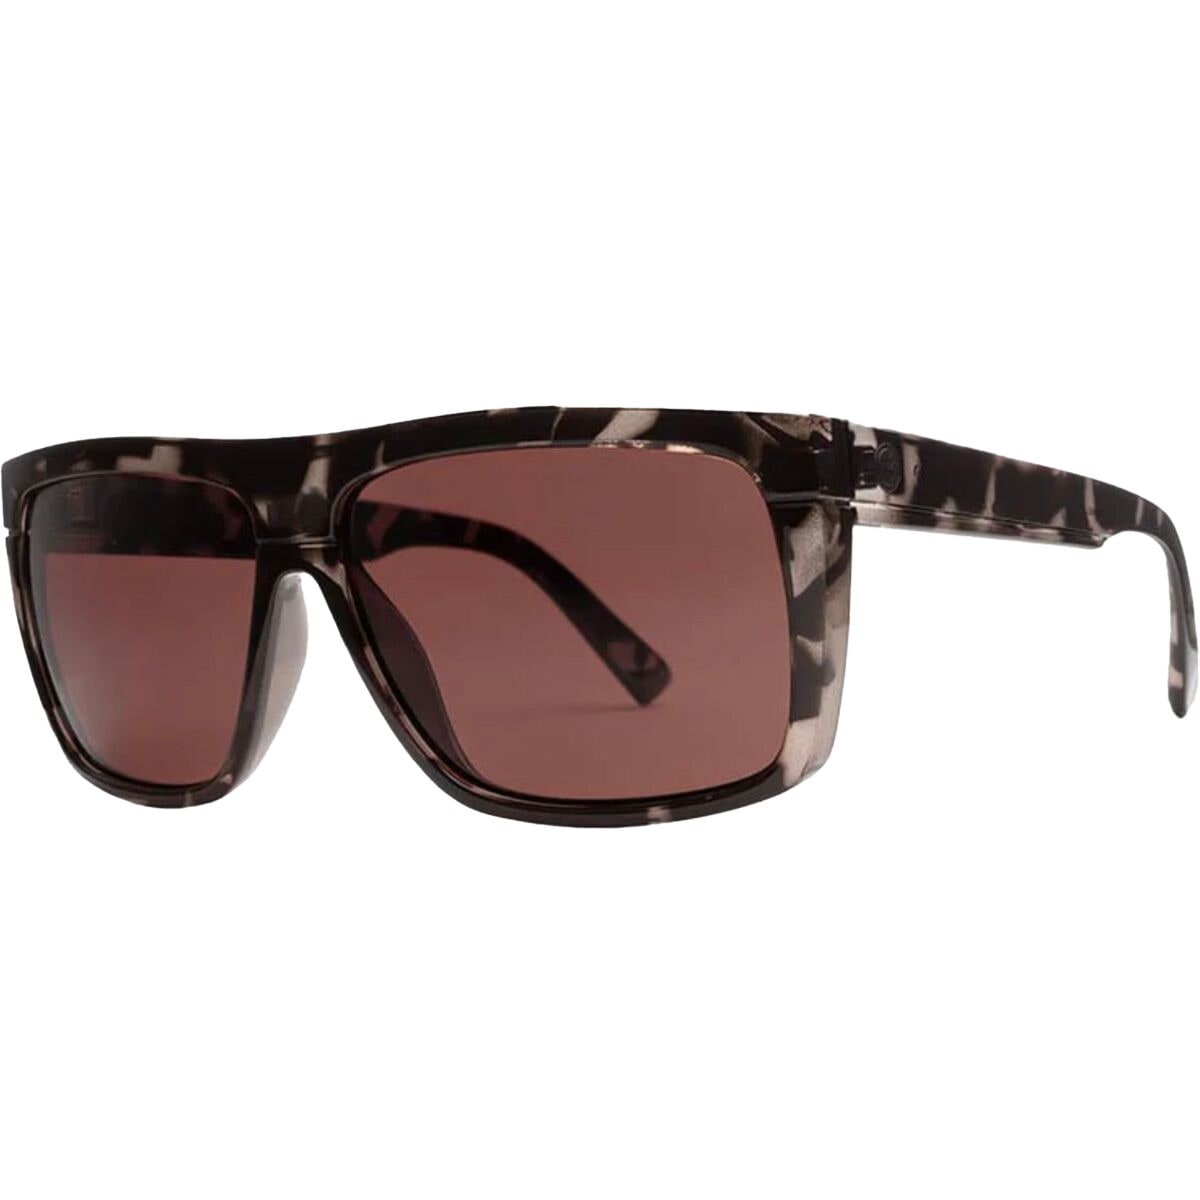 Поляризованные солнцезащитные очки с черным верхом Electric, цвет granite/rose polar black top